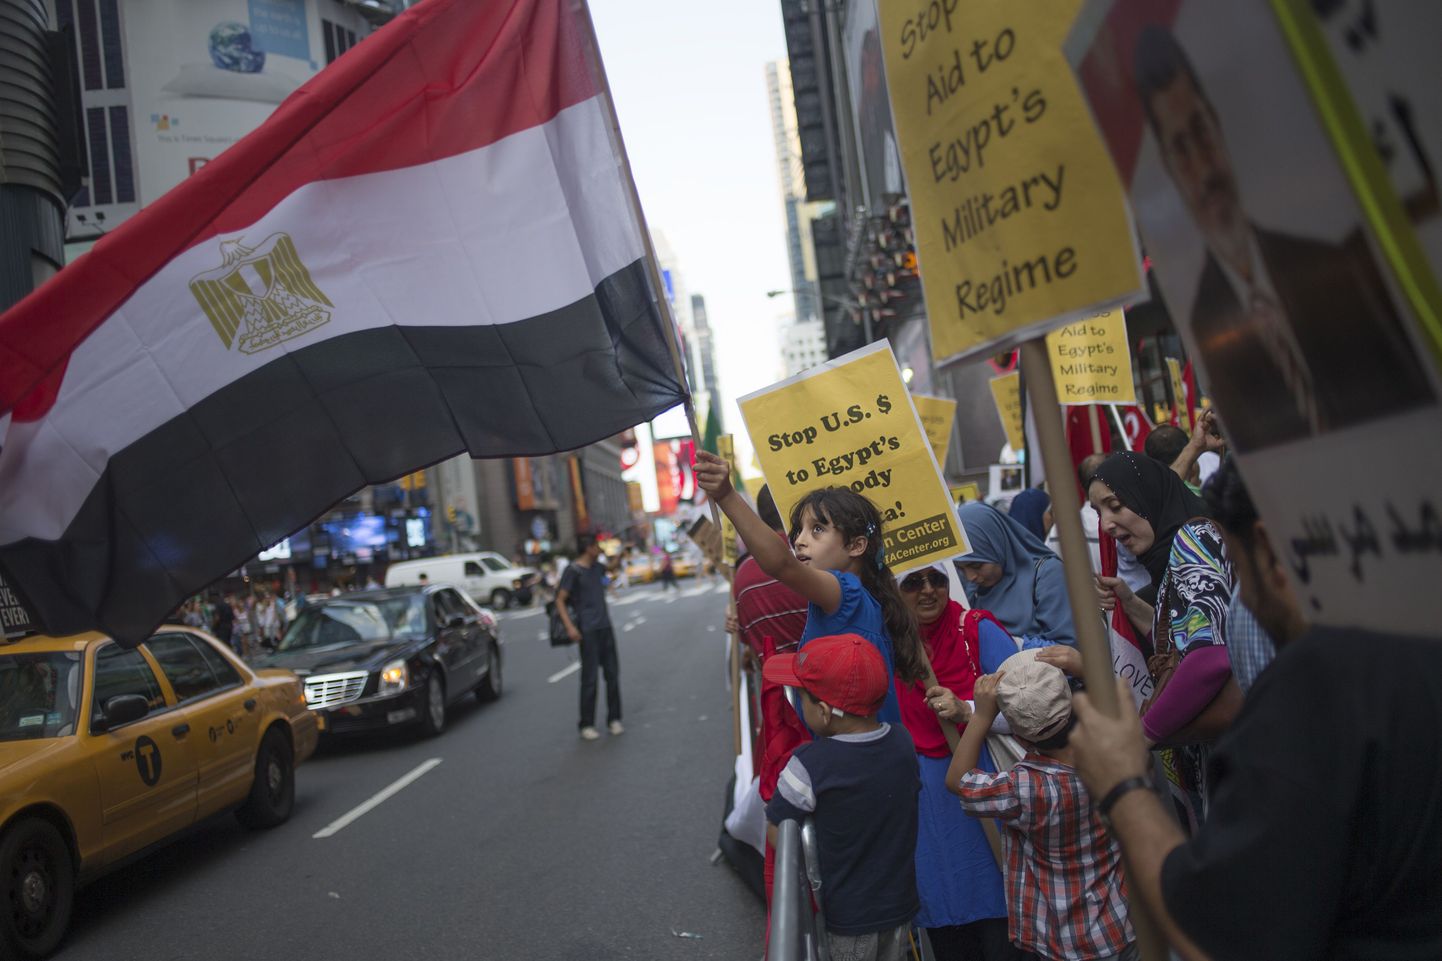 New Yorgis toimunud meeleavaldusel lehvitab väike tüdruk Egiptuse lippu ning tema selja taga seisev naine hoiab plakatit, mis nõuab USAlt Egiptusele antava sõjalise abi peatamist.